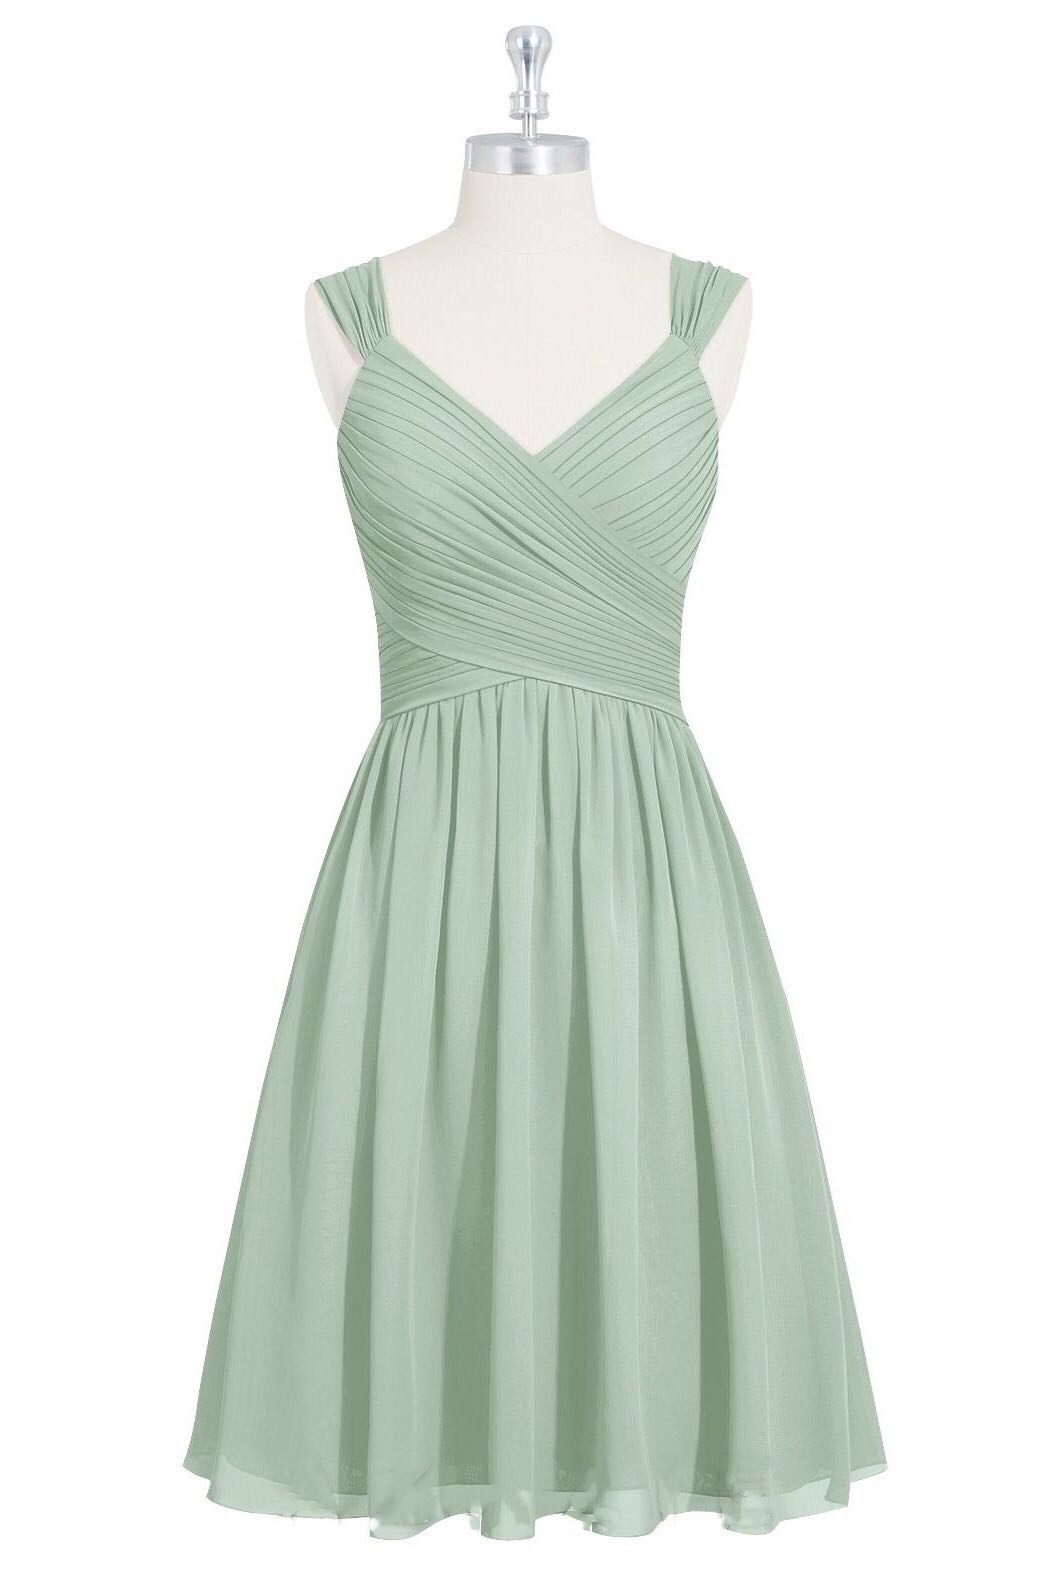 Sage Green Chiffon Lace-Up Short Bridesmaid Dress